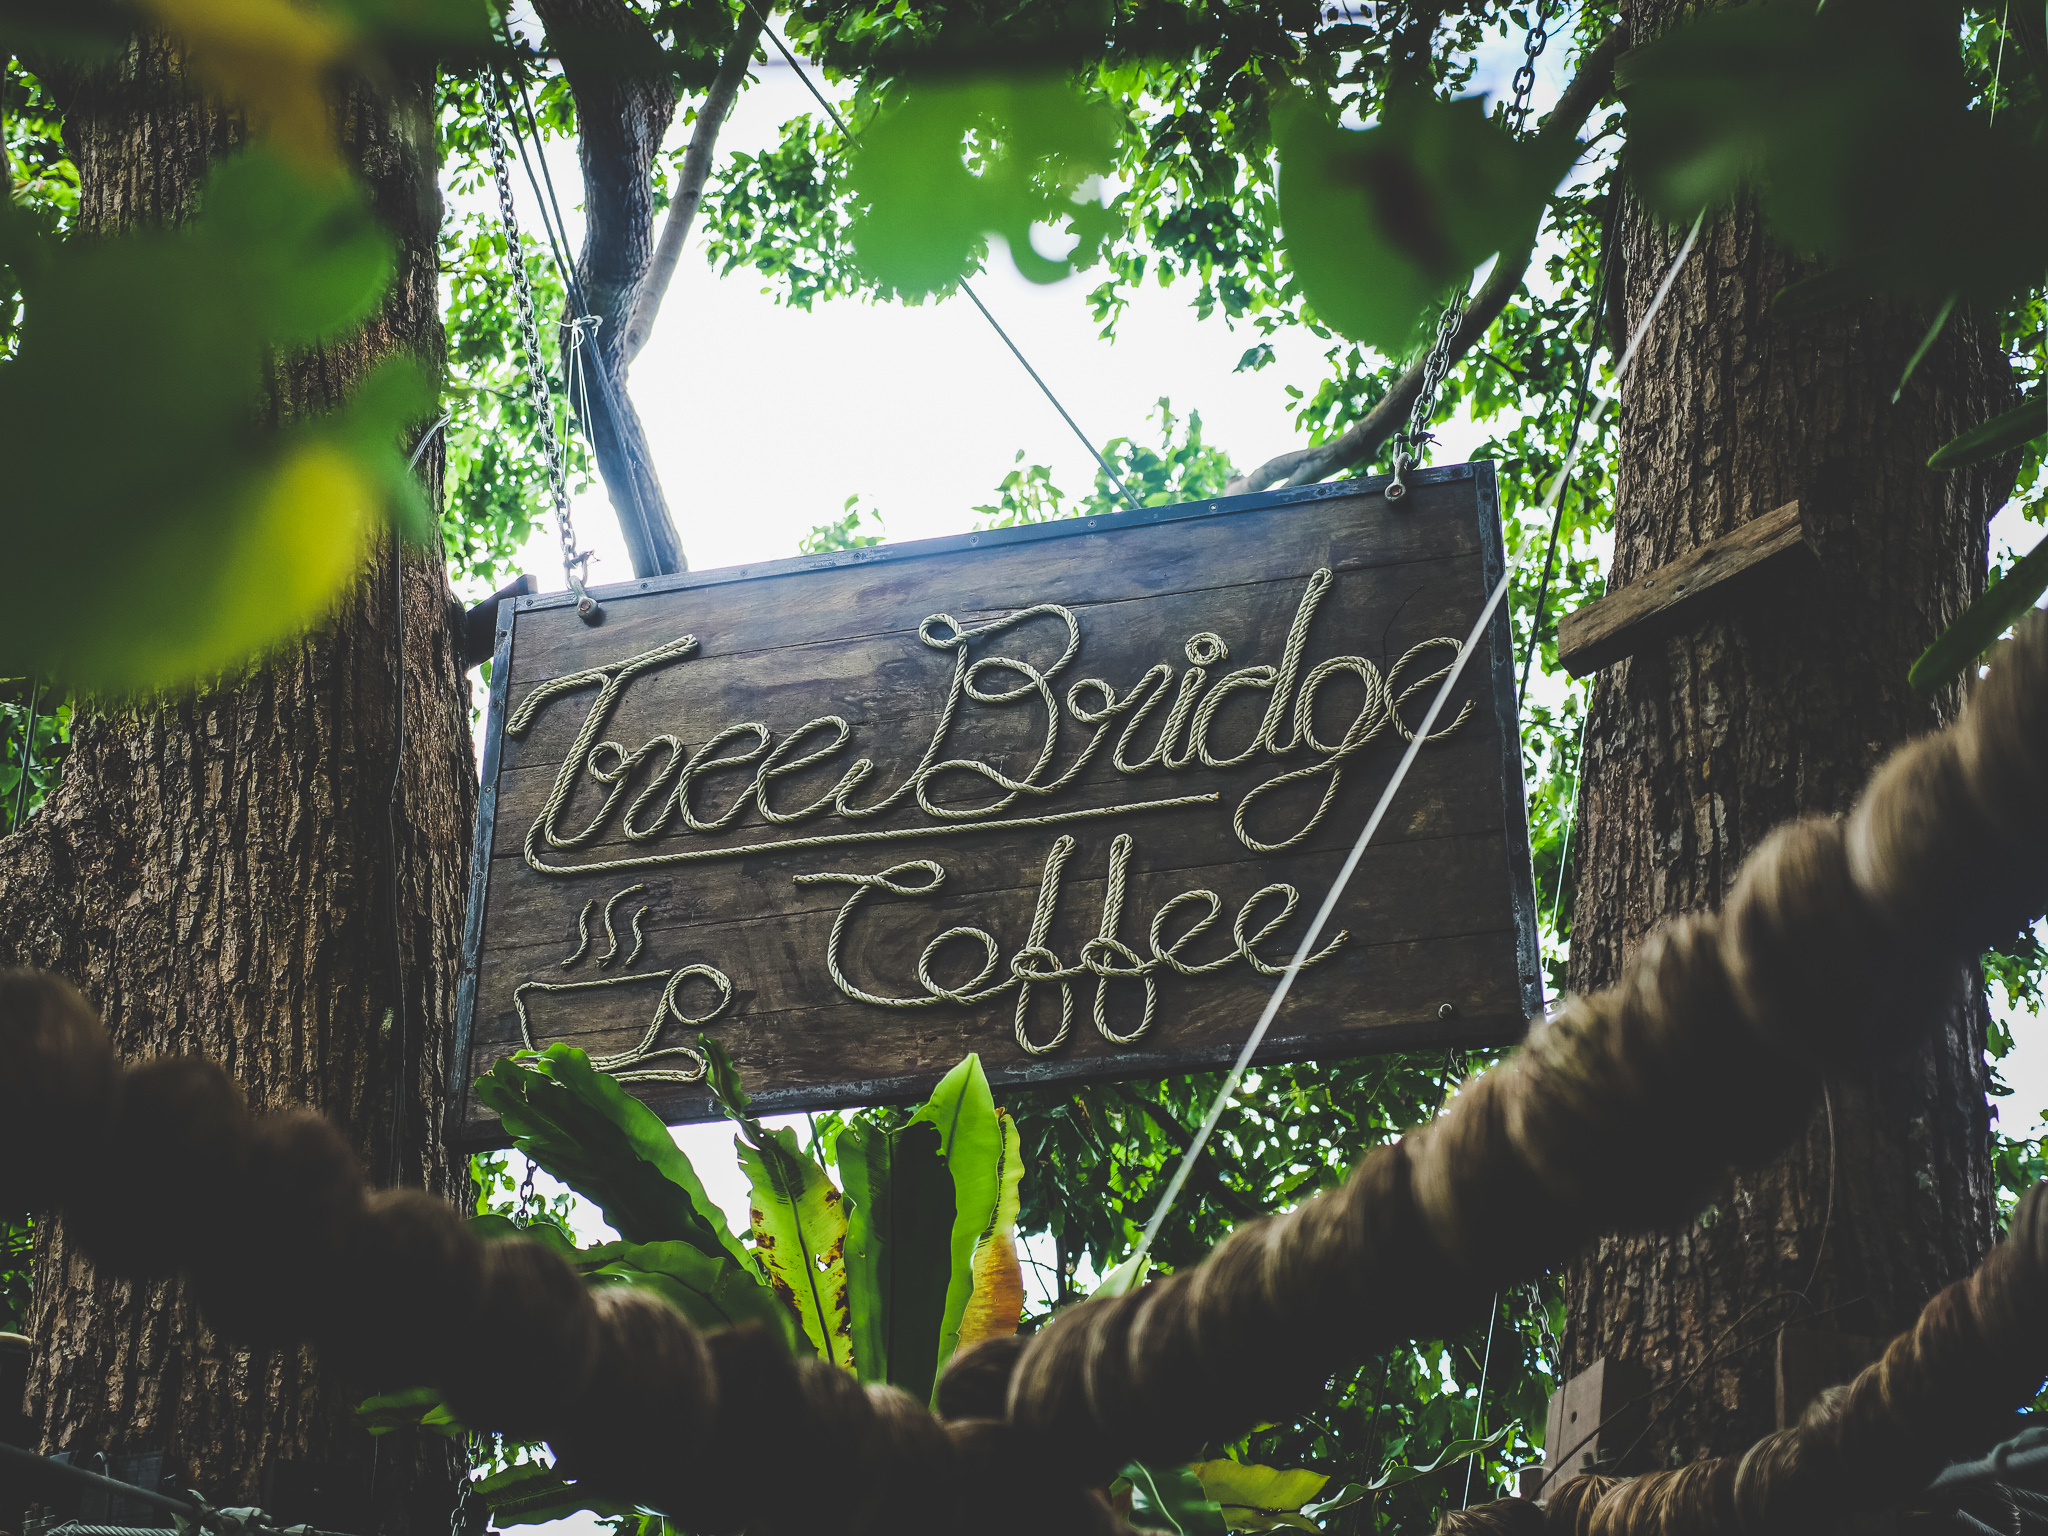 Panneau à l'entrée du tree bridge coffee